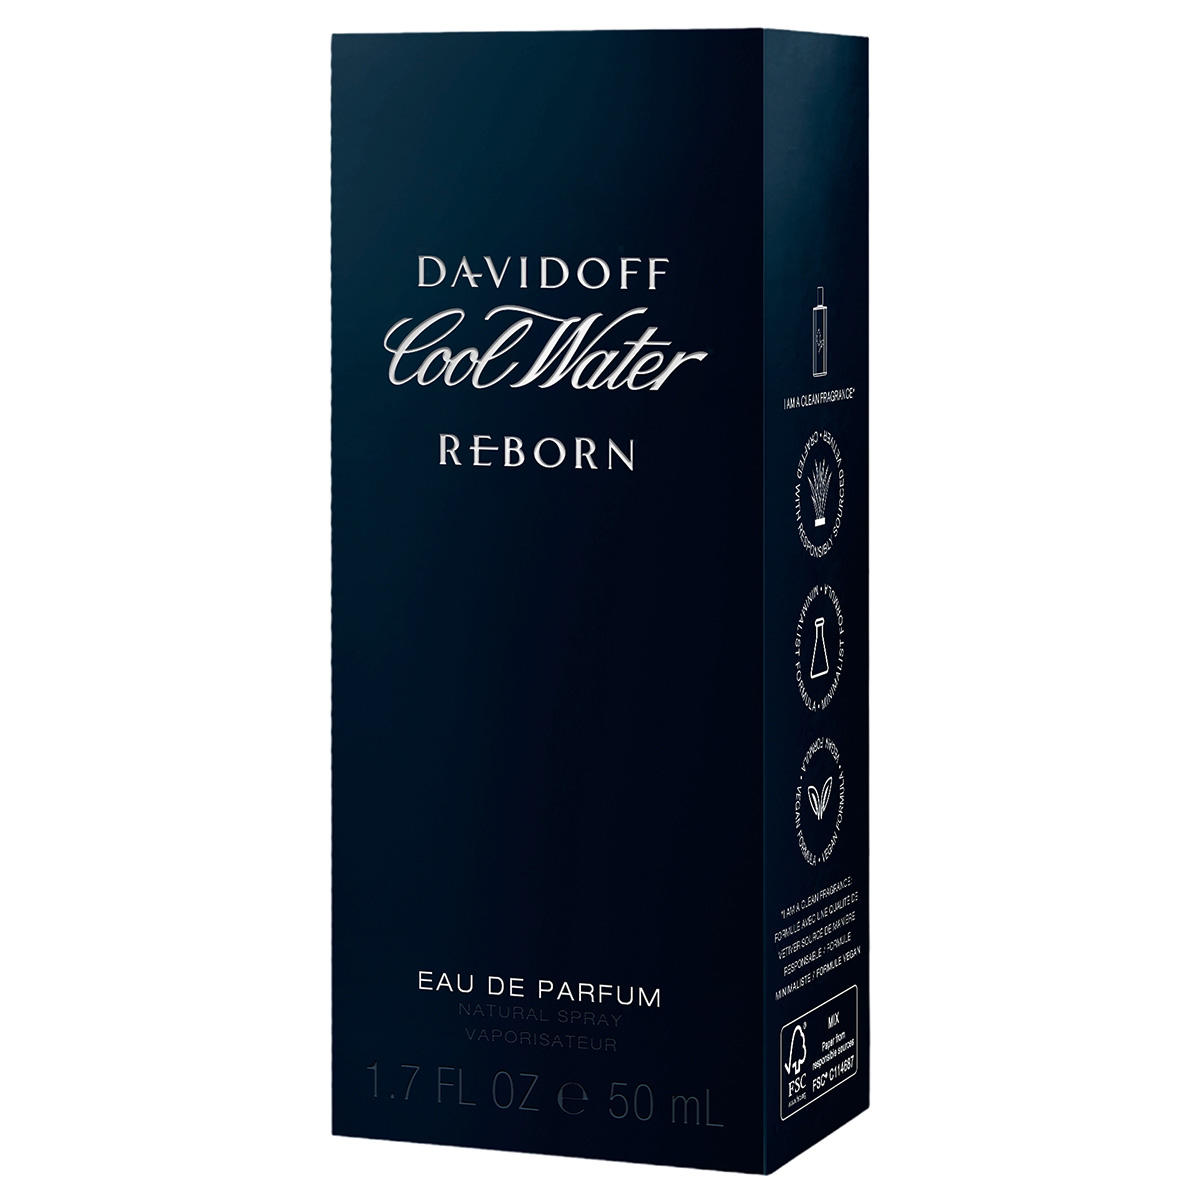 DAVIDOFF Cool Water Reborn Eau de Parfum 50 ml - 2